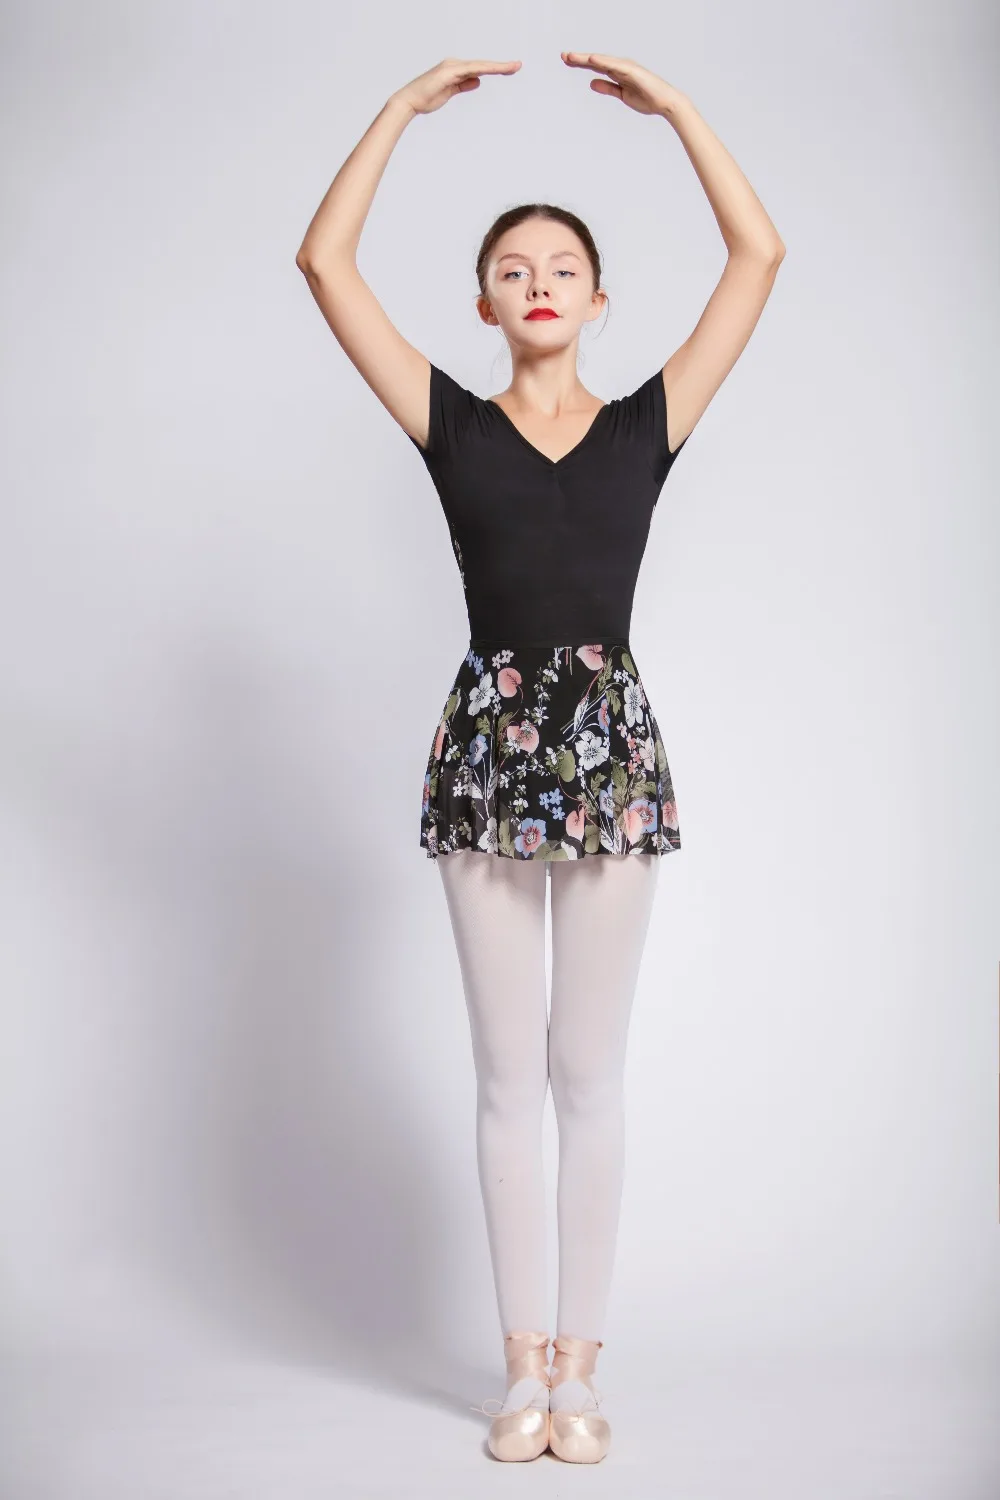 Балетная танцевальная юбка дизайн Высокое качество цветочный сетчатый купальник маленький фартук элегантный тренировочный танцевальный трико с юбкой балет